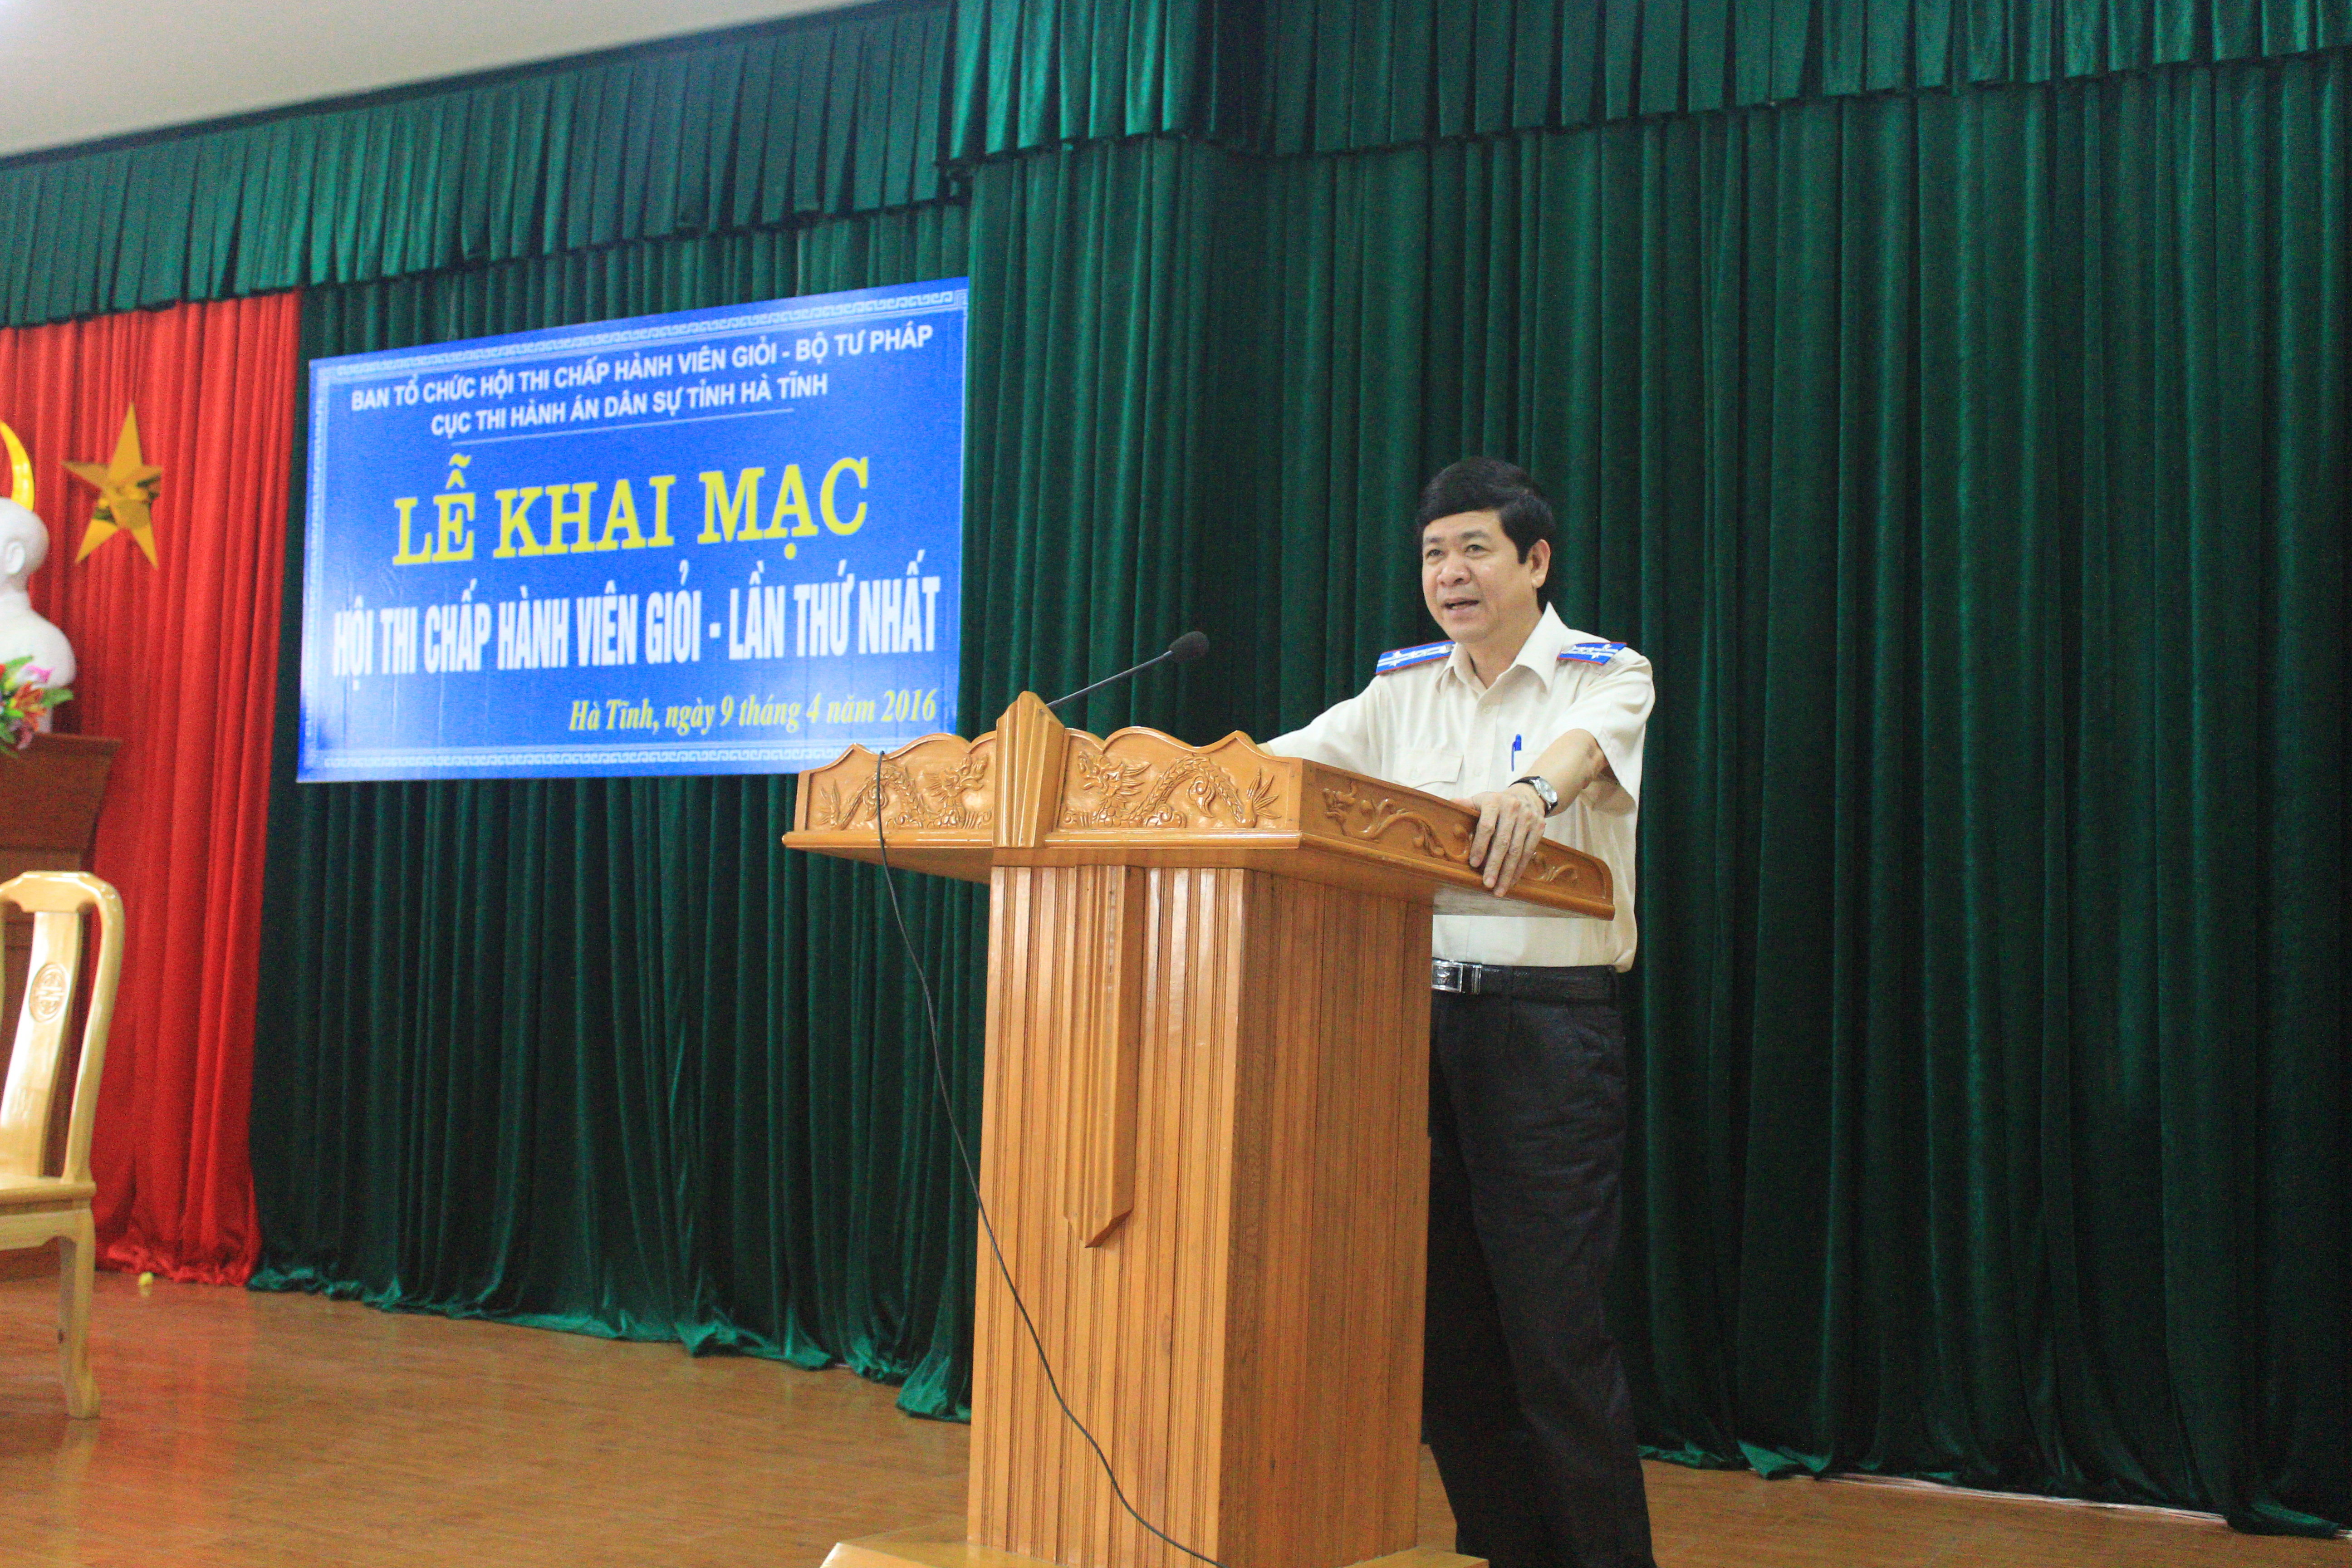 Cục Thi hành án dân sự tỉnh Hà Tĩnh tổ chức Hội thi Chấp hành viên giỏi lần thứ nhất năm 2016